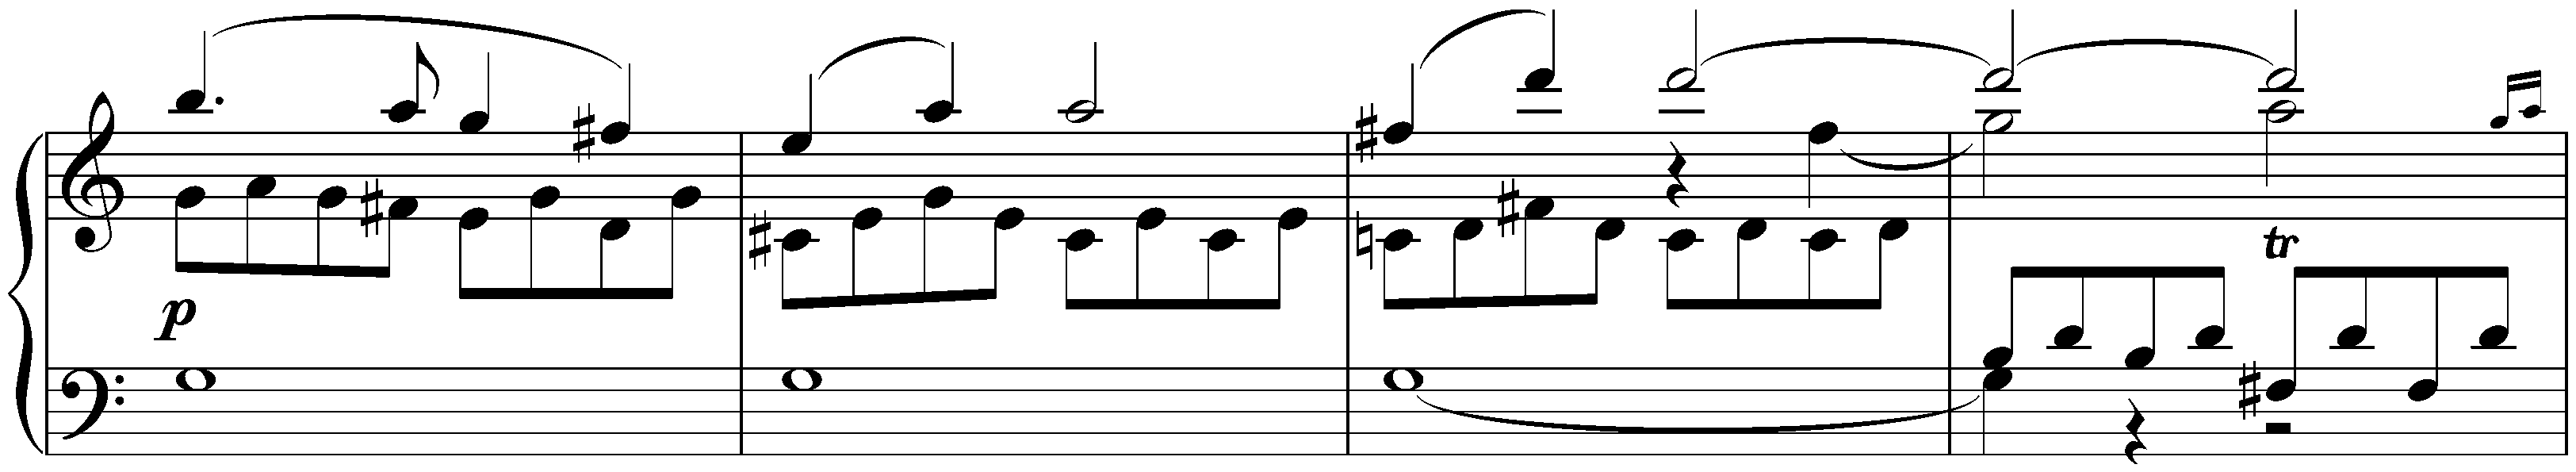 Sonata in C major, D 279; 1. Allegro moderato